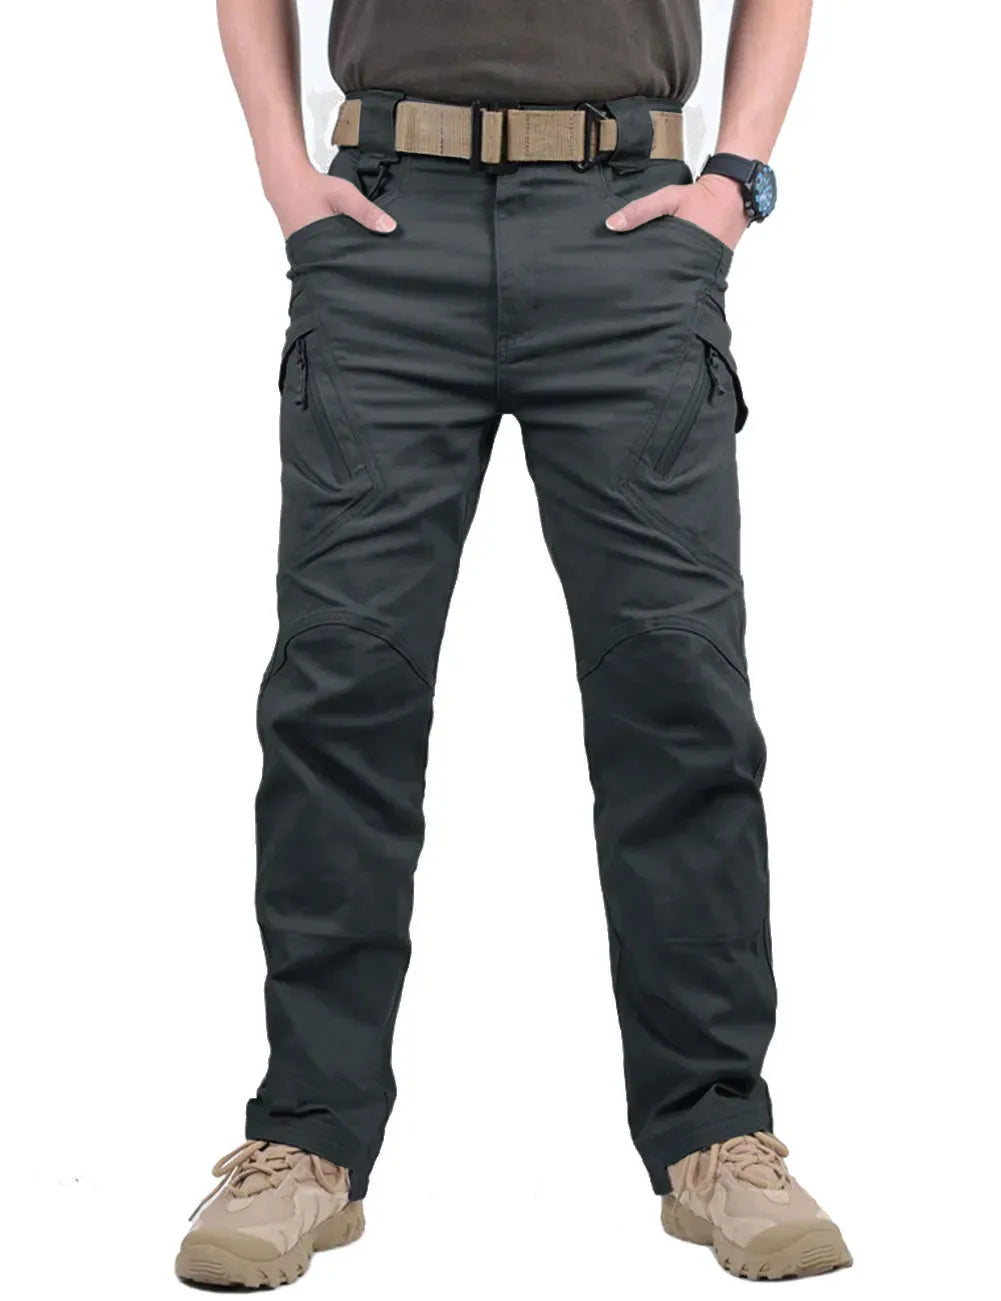 Men's Tactical Pants: Ultimate Outdoor Wear